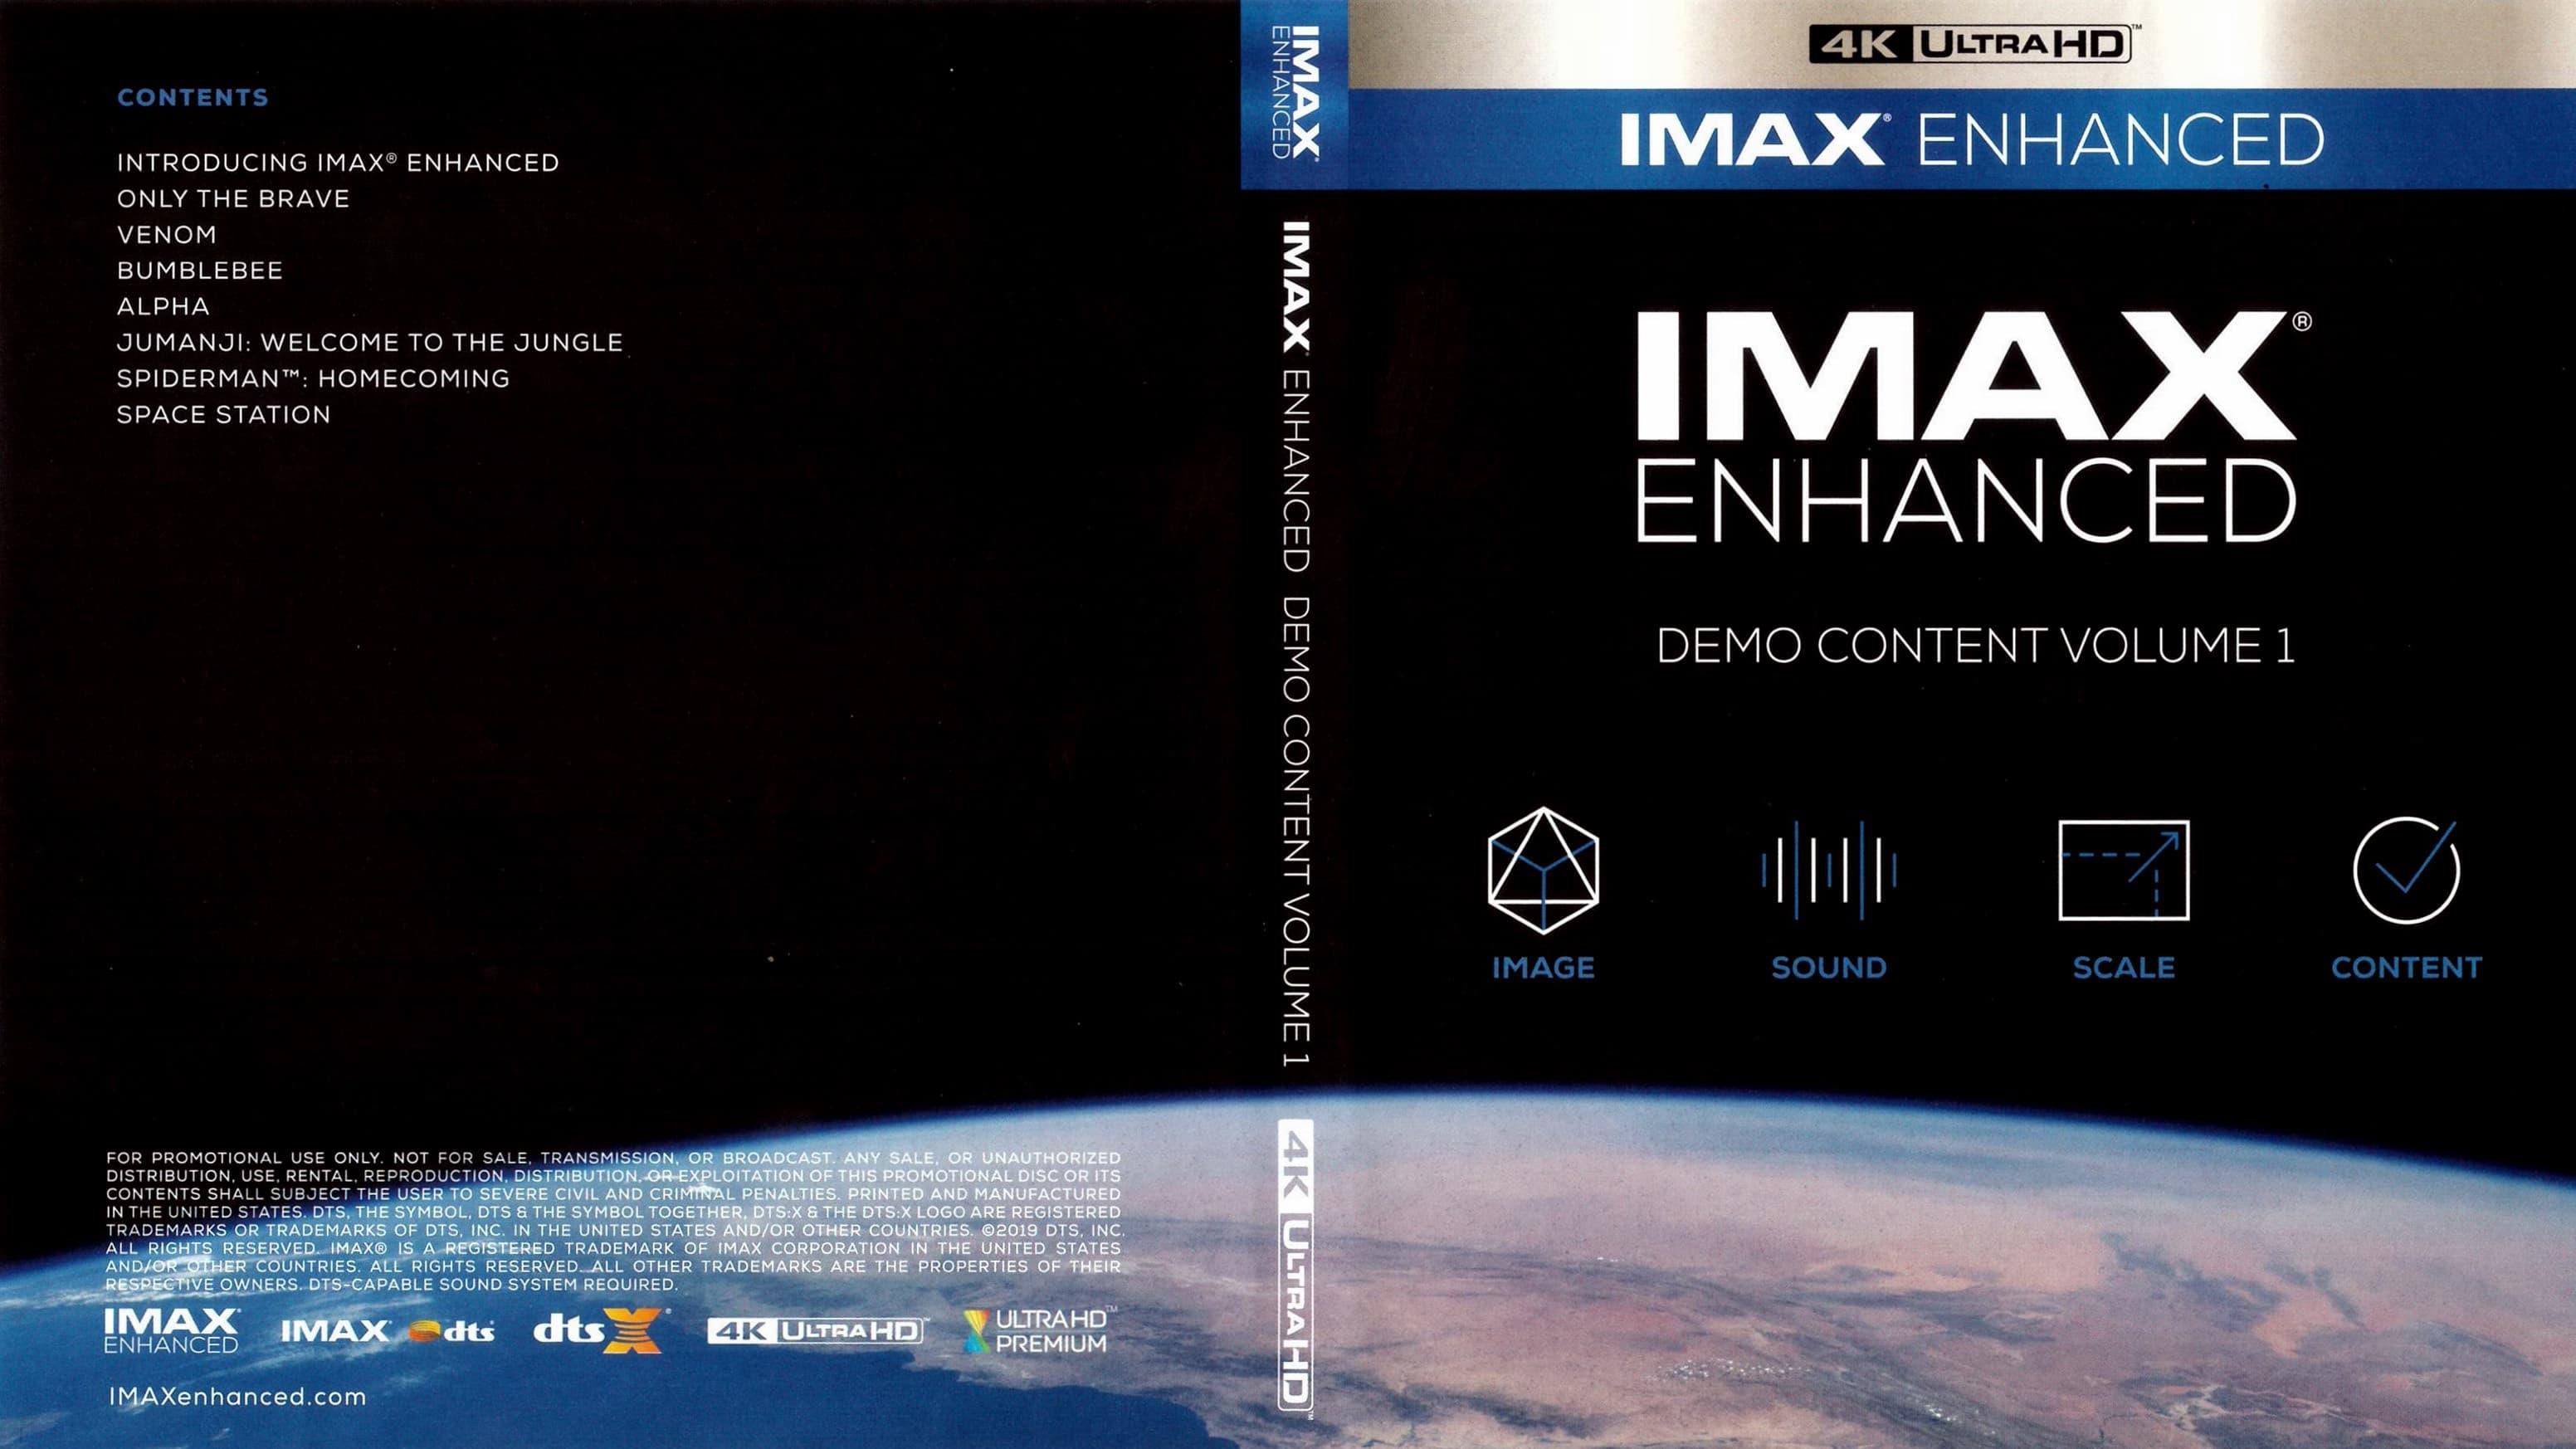 IMAX Enhanced Demo Content Vol. 1 backdrop